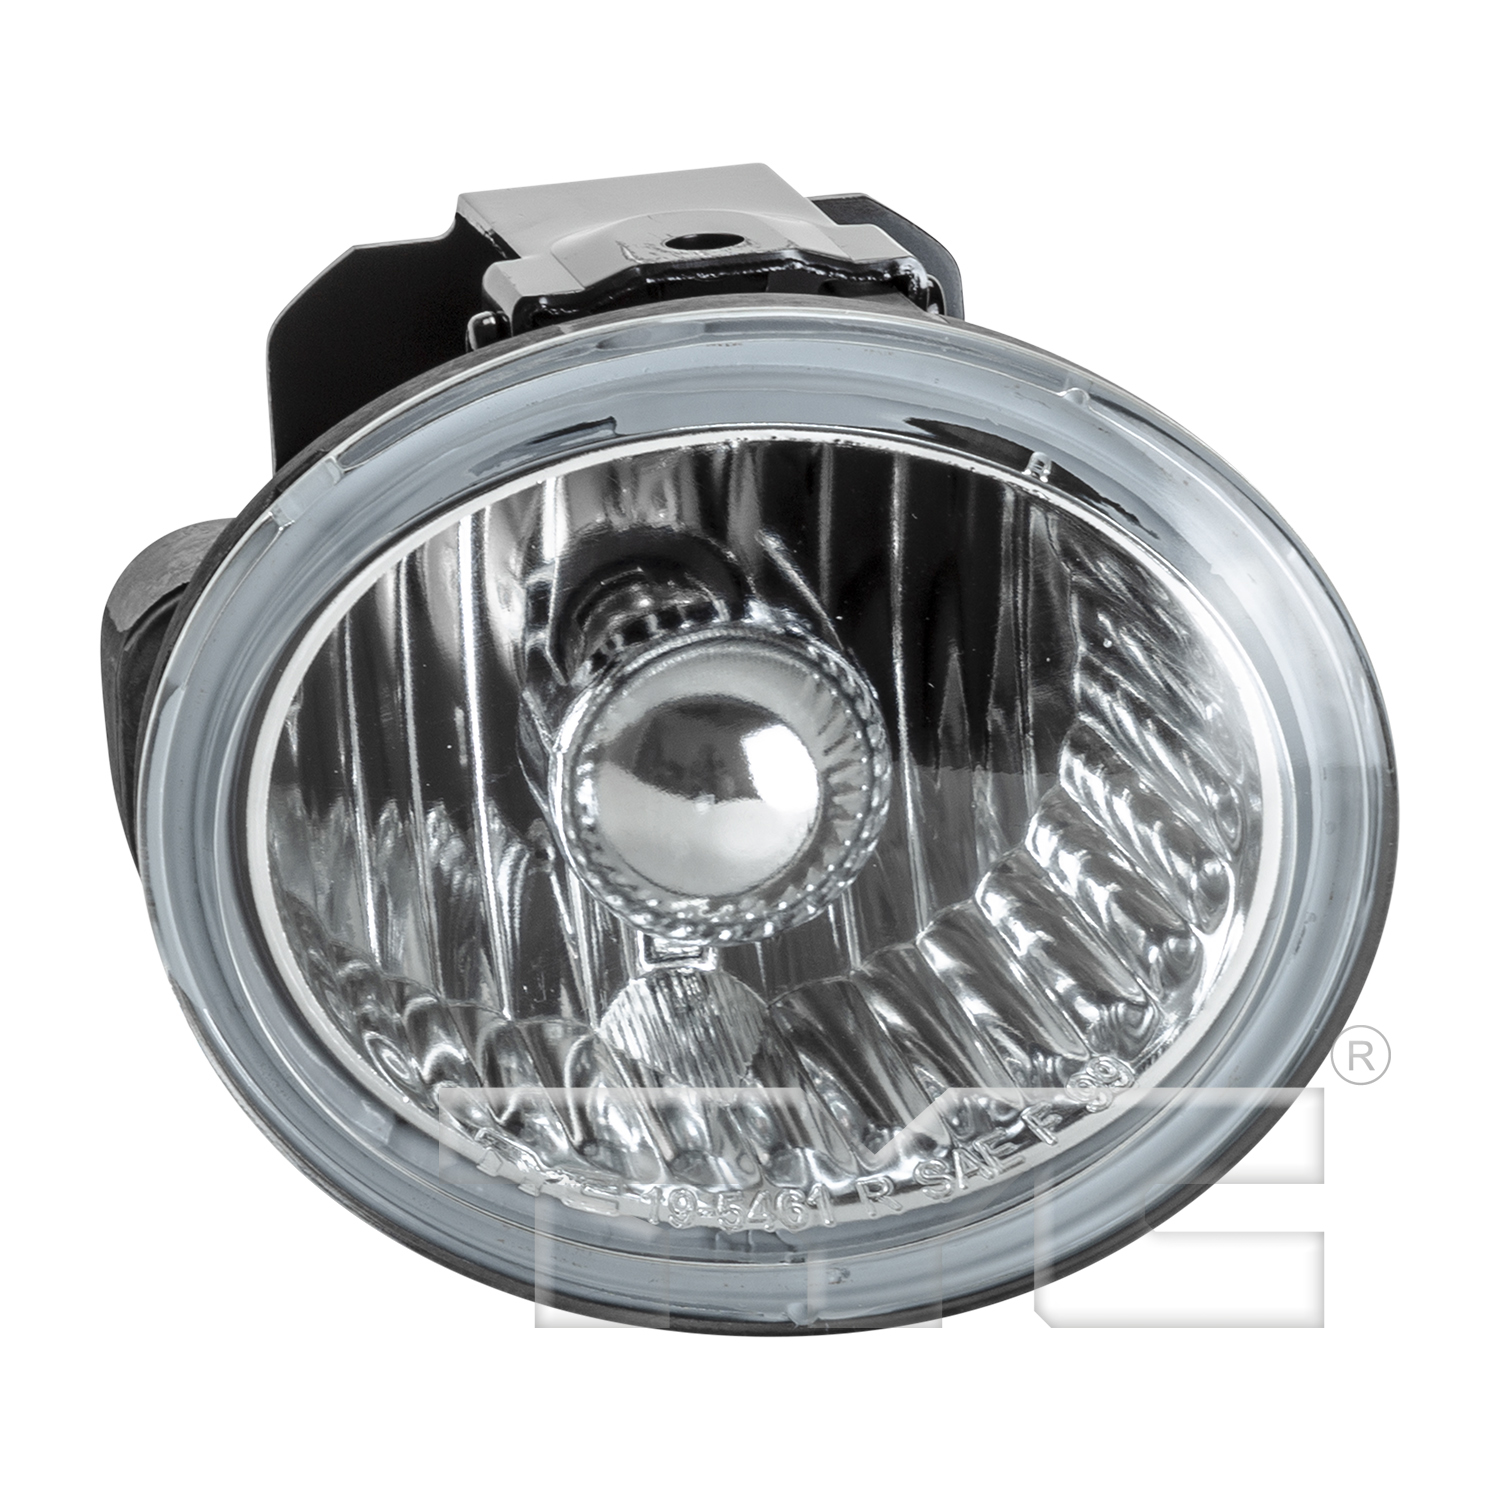 Aftermarket FOG LIGHTS for INFINITI - FX35, FX35,03-05,RT Fog lamp assy